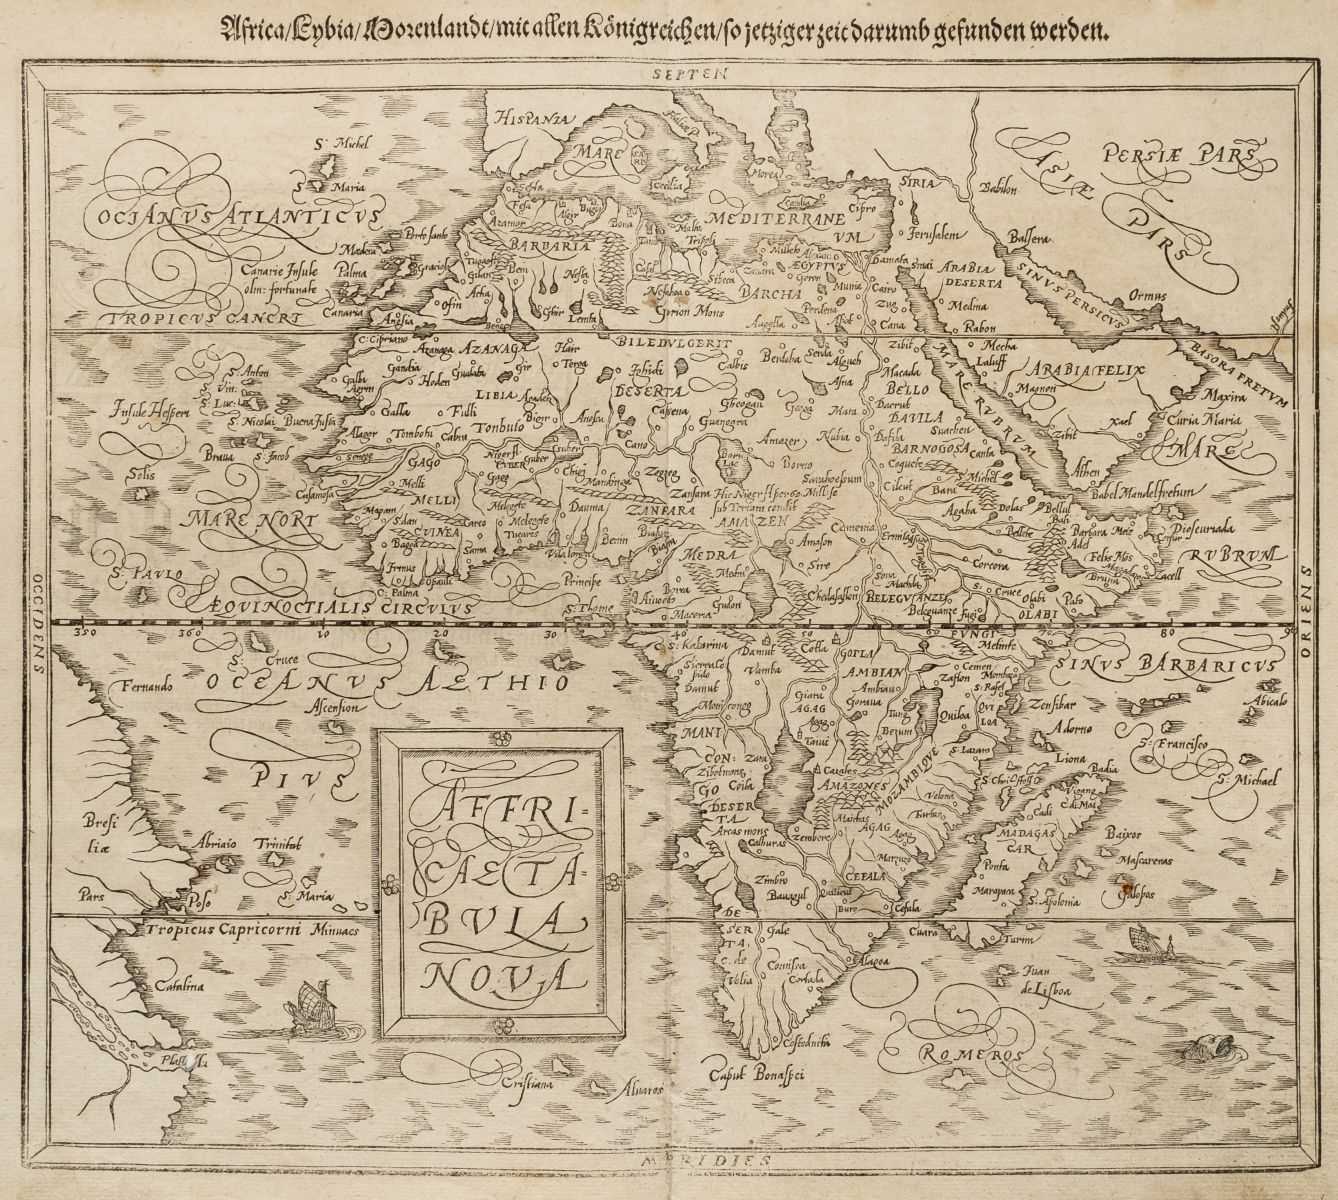 Lot 2 - Africa. Munster (Sebastian). Africa Lybia Morenlandt mit allen Koenigreichen..., 1580